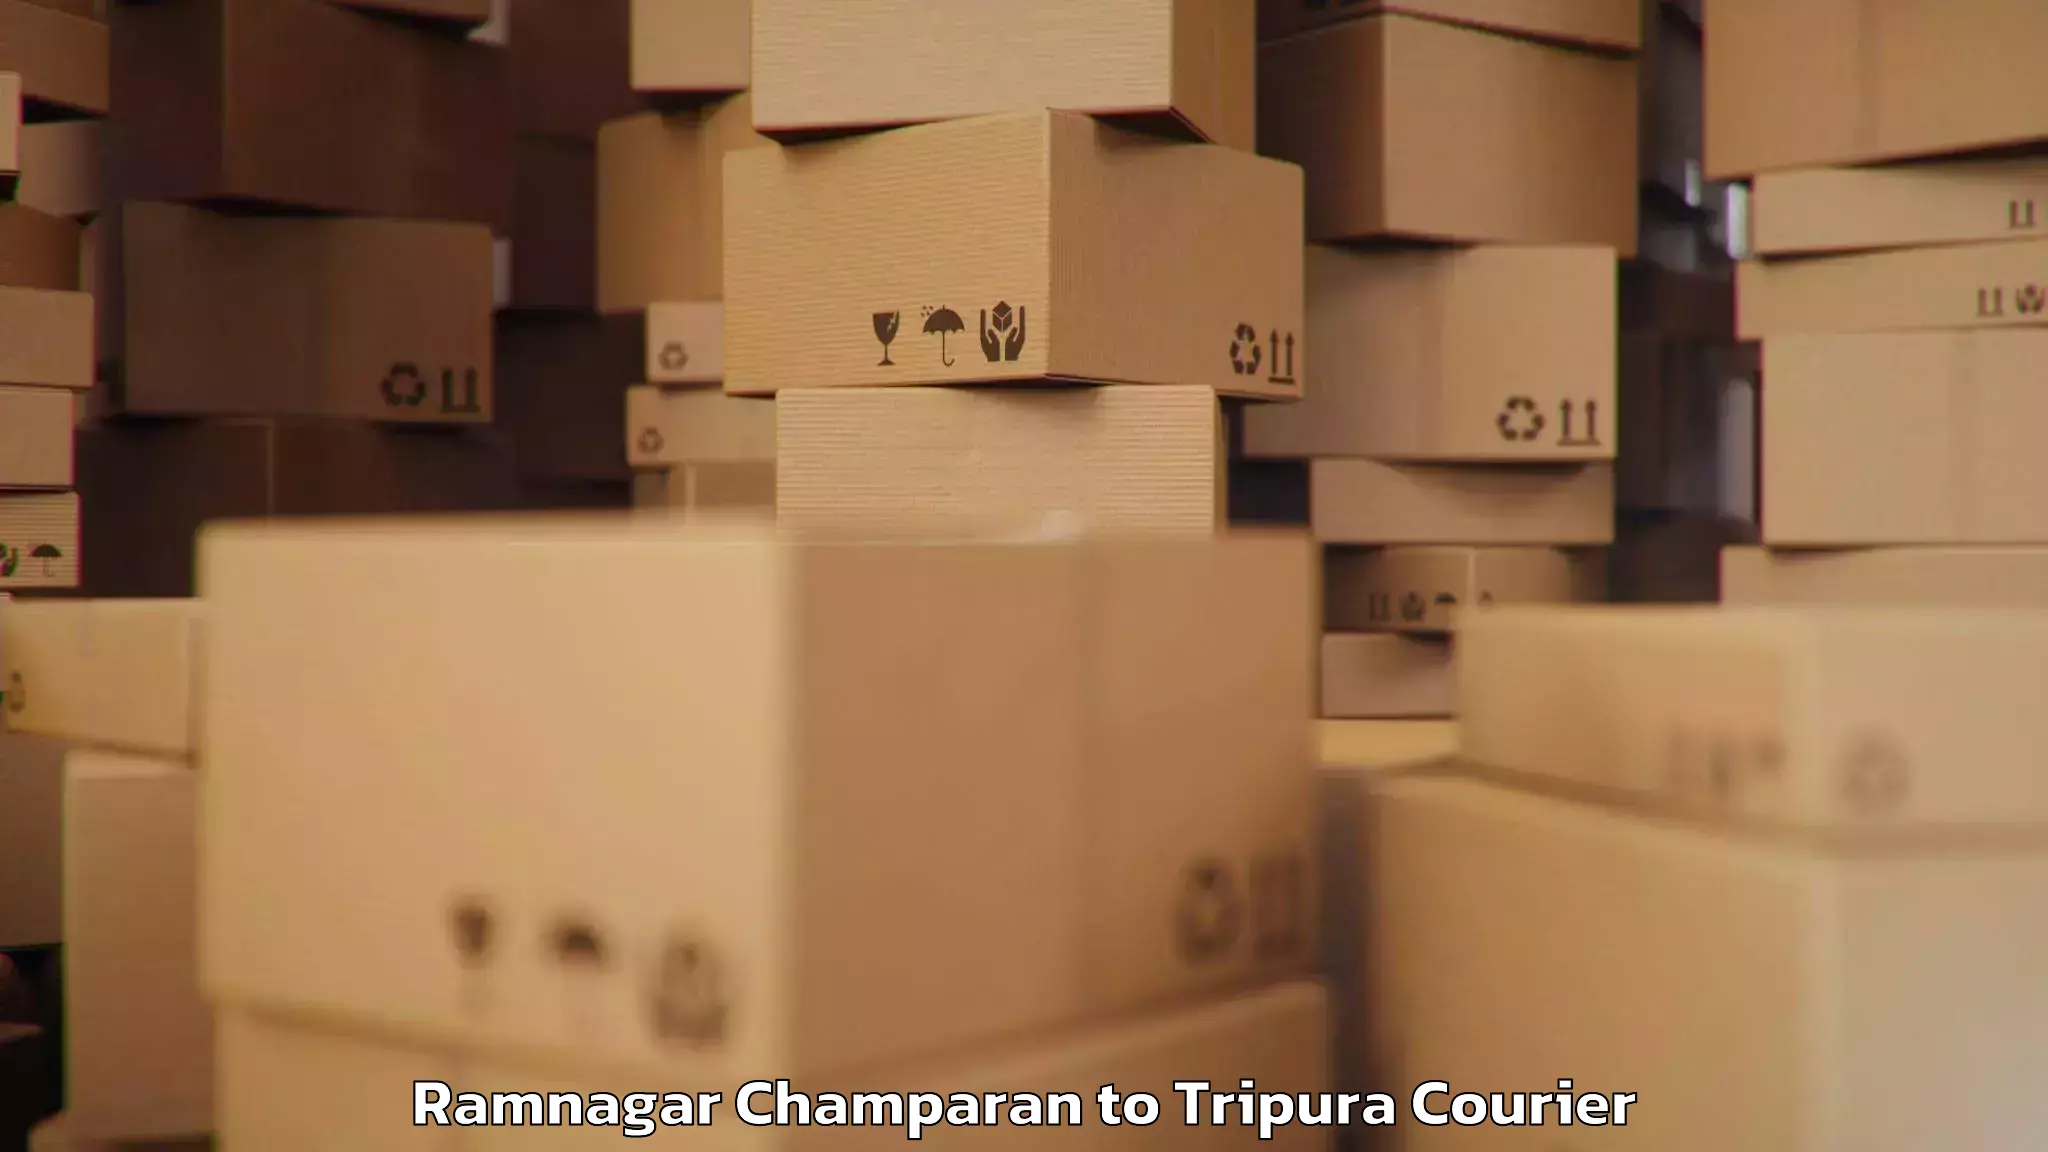 Baggage courier optimization Ramnagar Champaran to Kamalpur